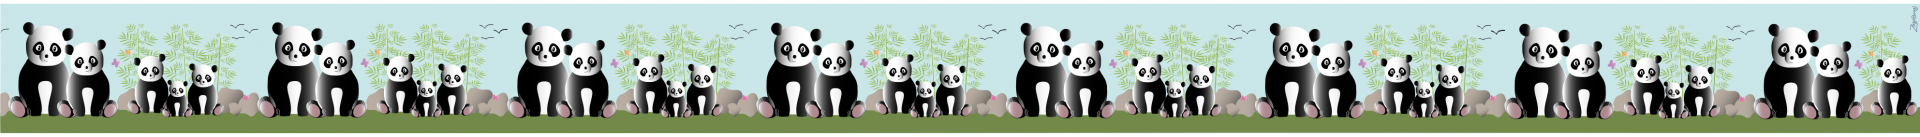 Pandas 2